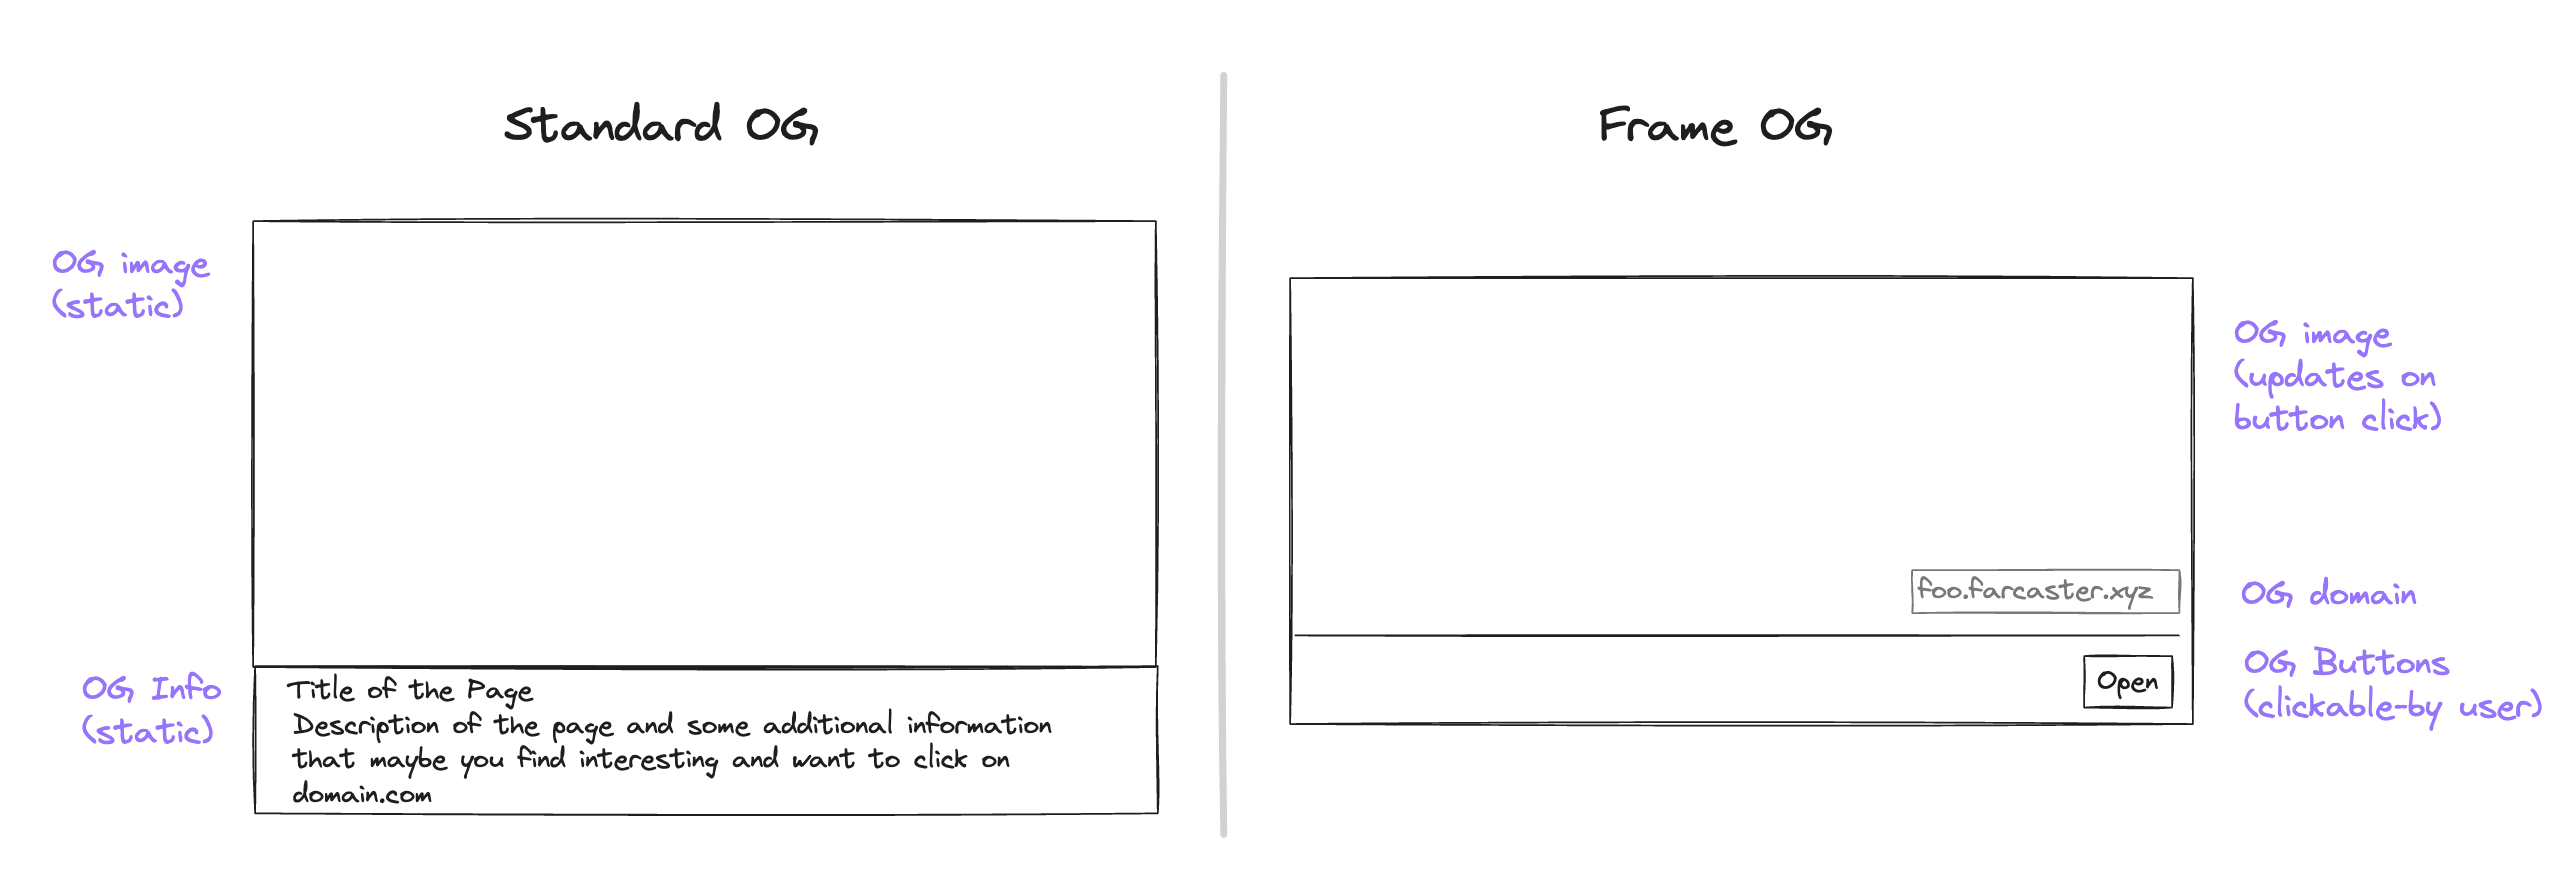 Frames vs OG